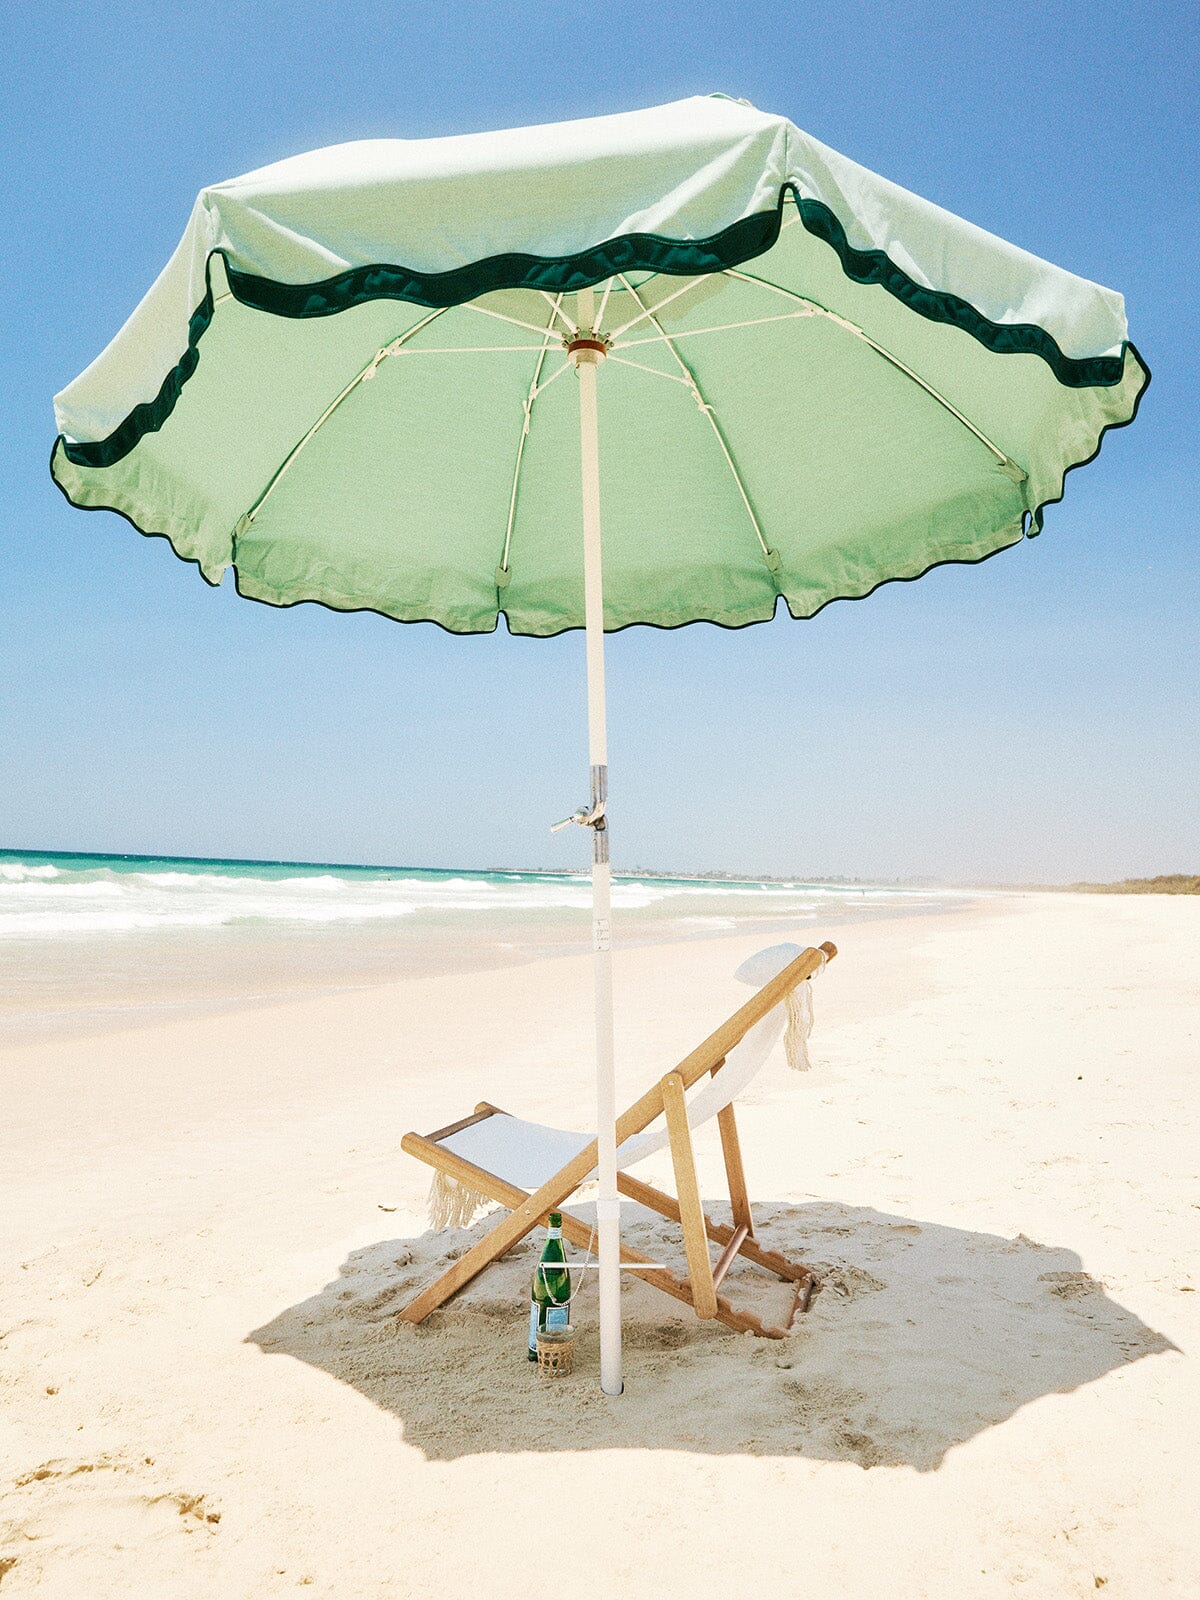 Beach club umbrella and white chair on the beach